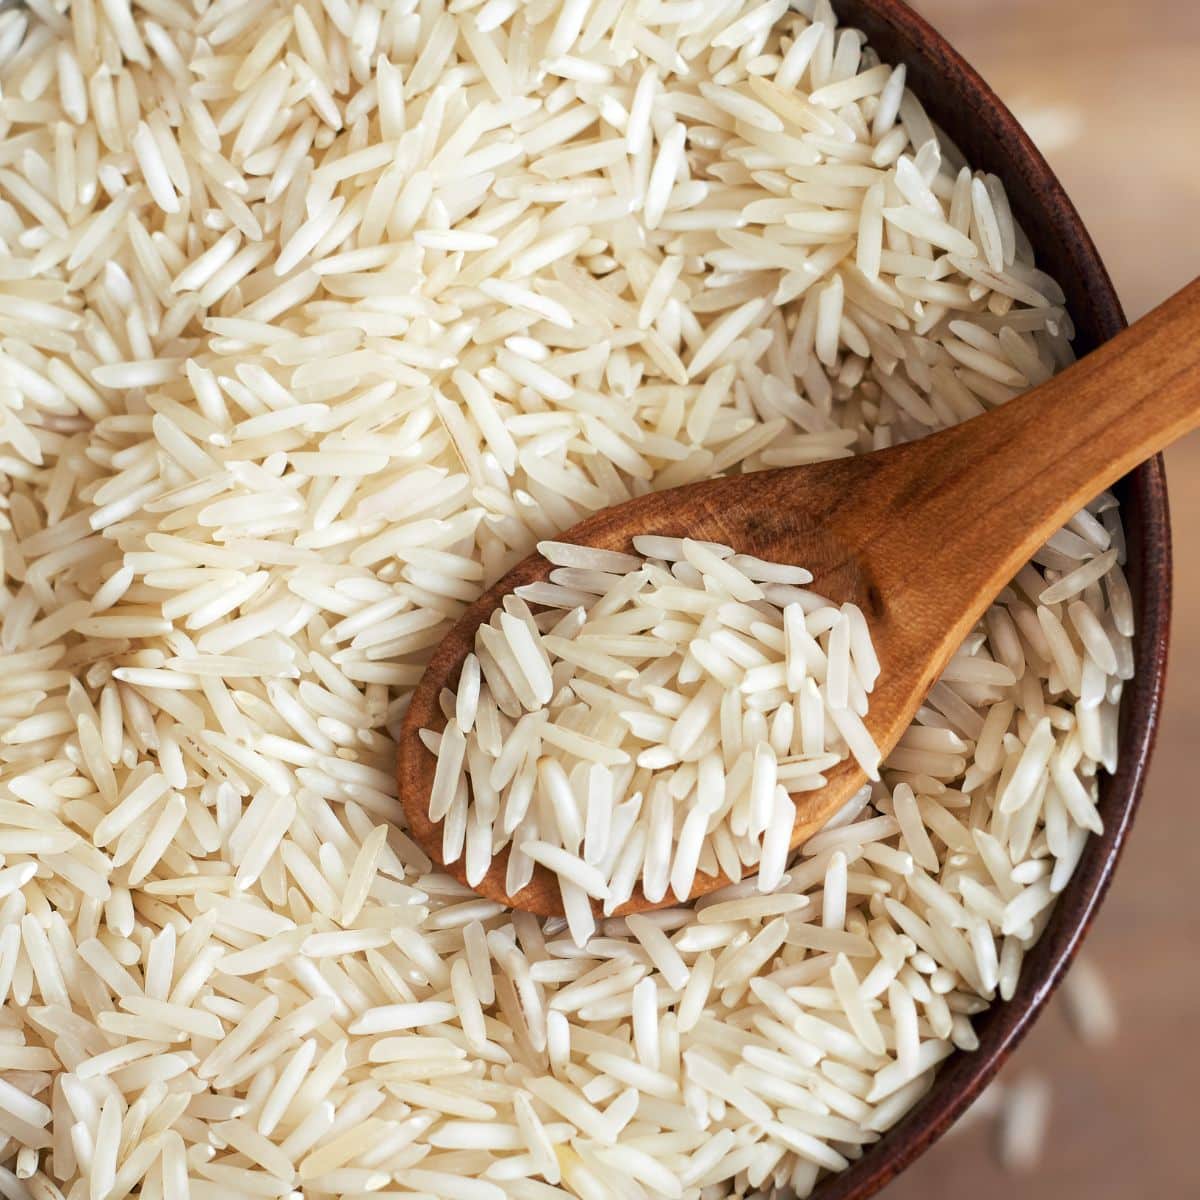 Dry basmati rice